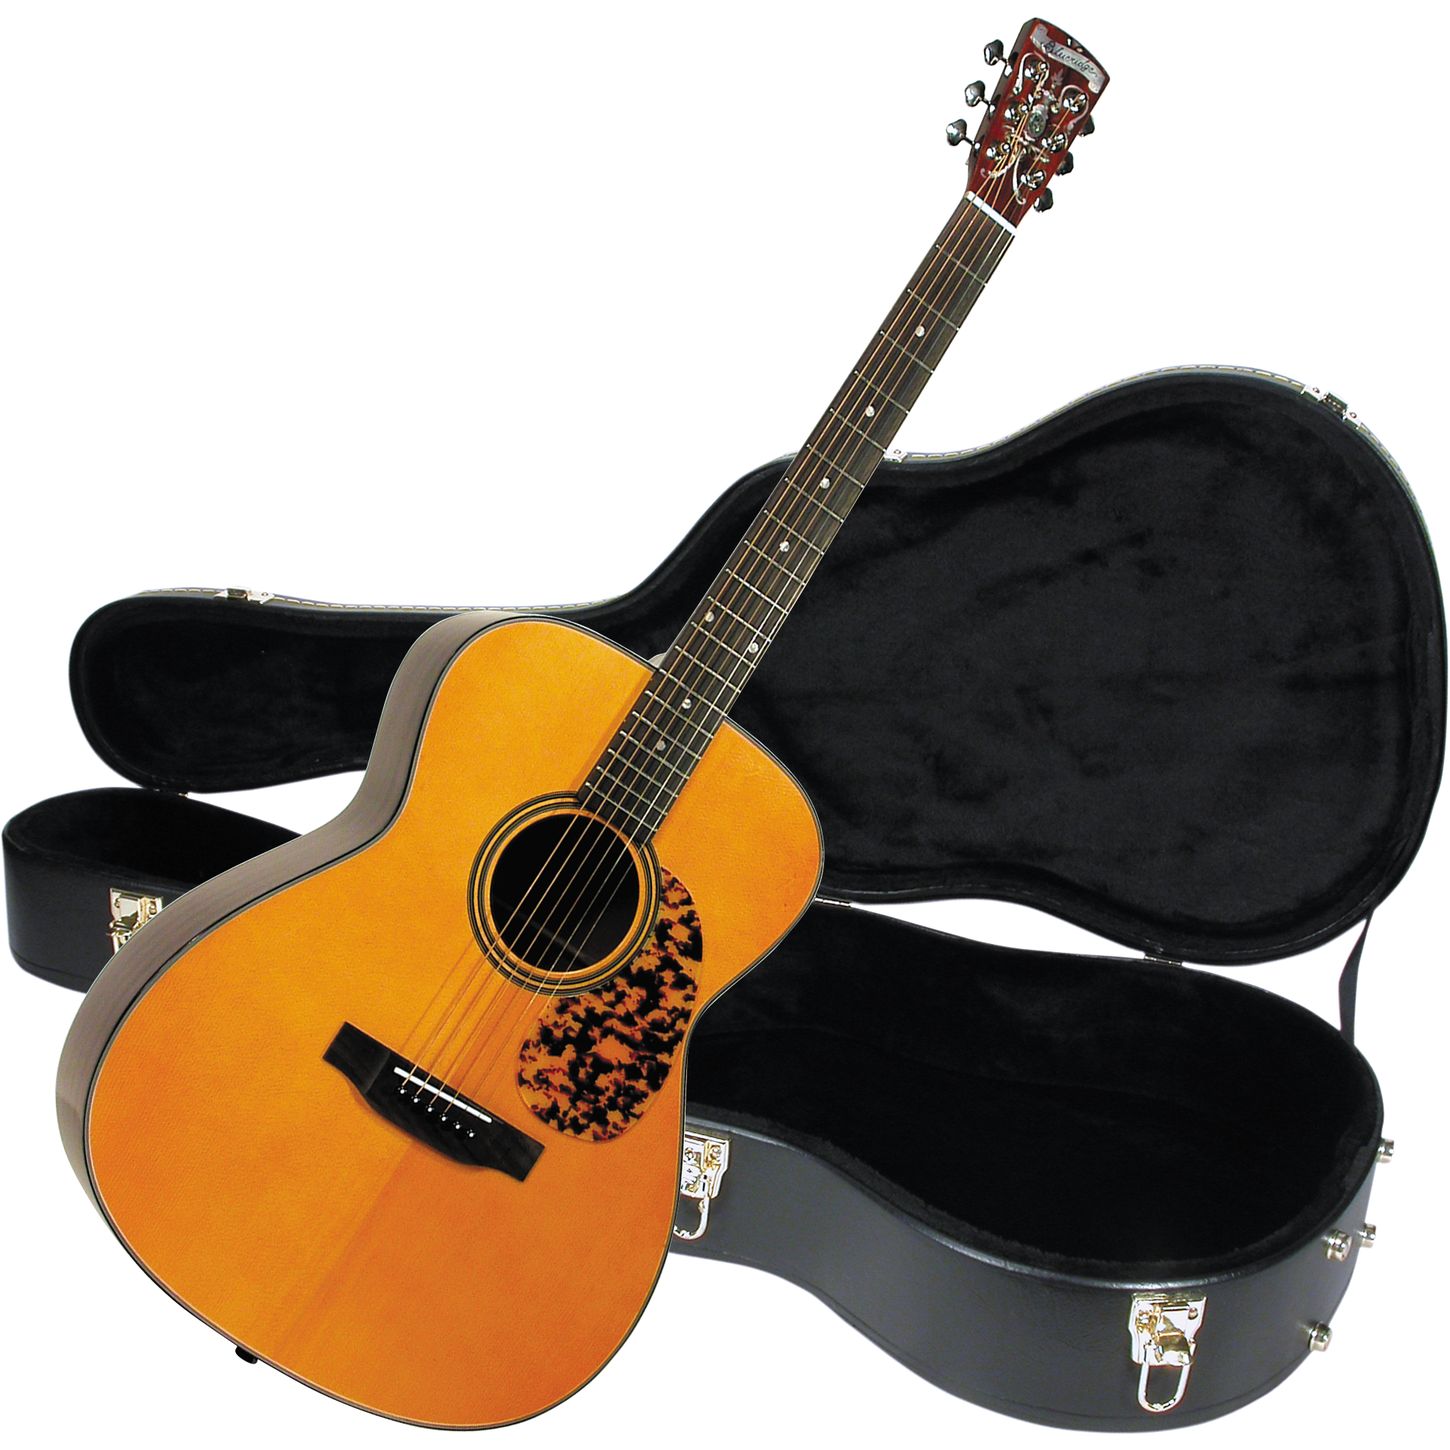 Blueridge Acoustic Guitar